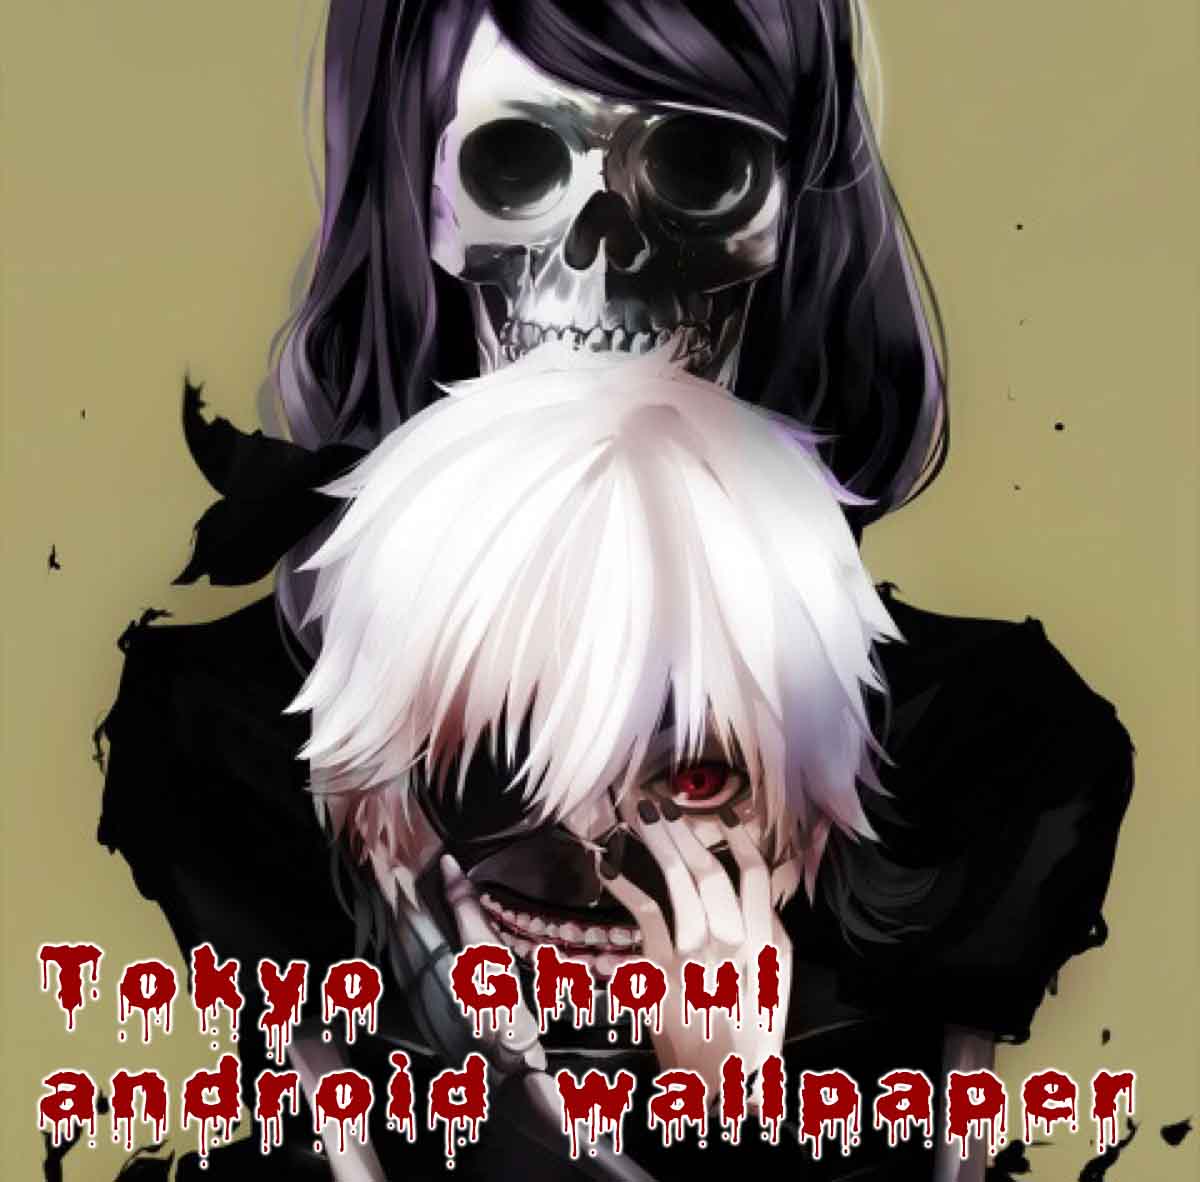 fond d'écran tokyo ghoul android,police de caractère,dessin animé,anime,cool,personnage fictif